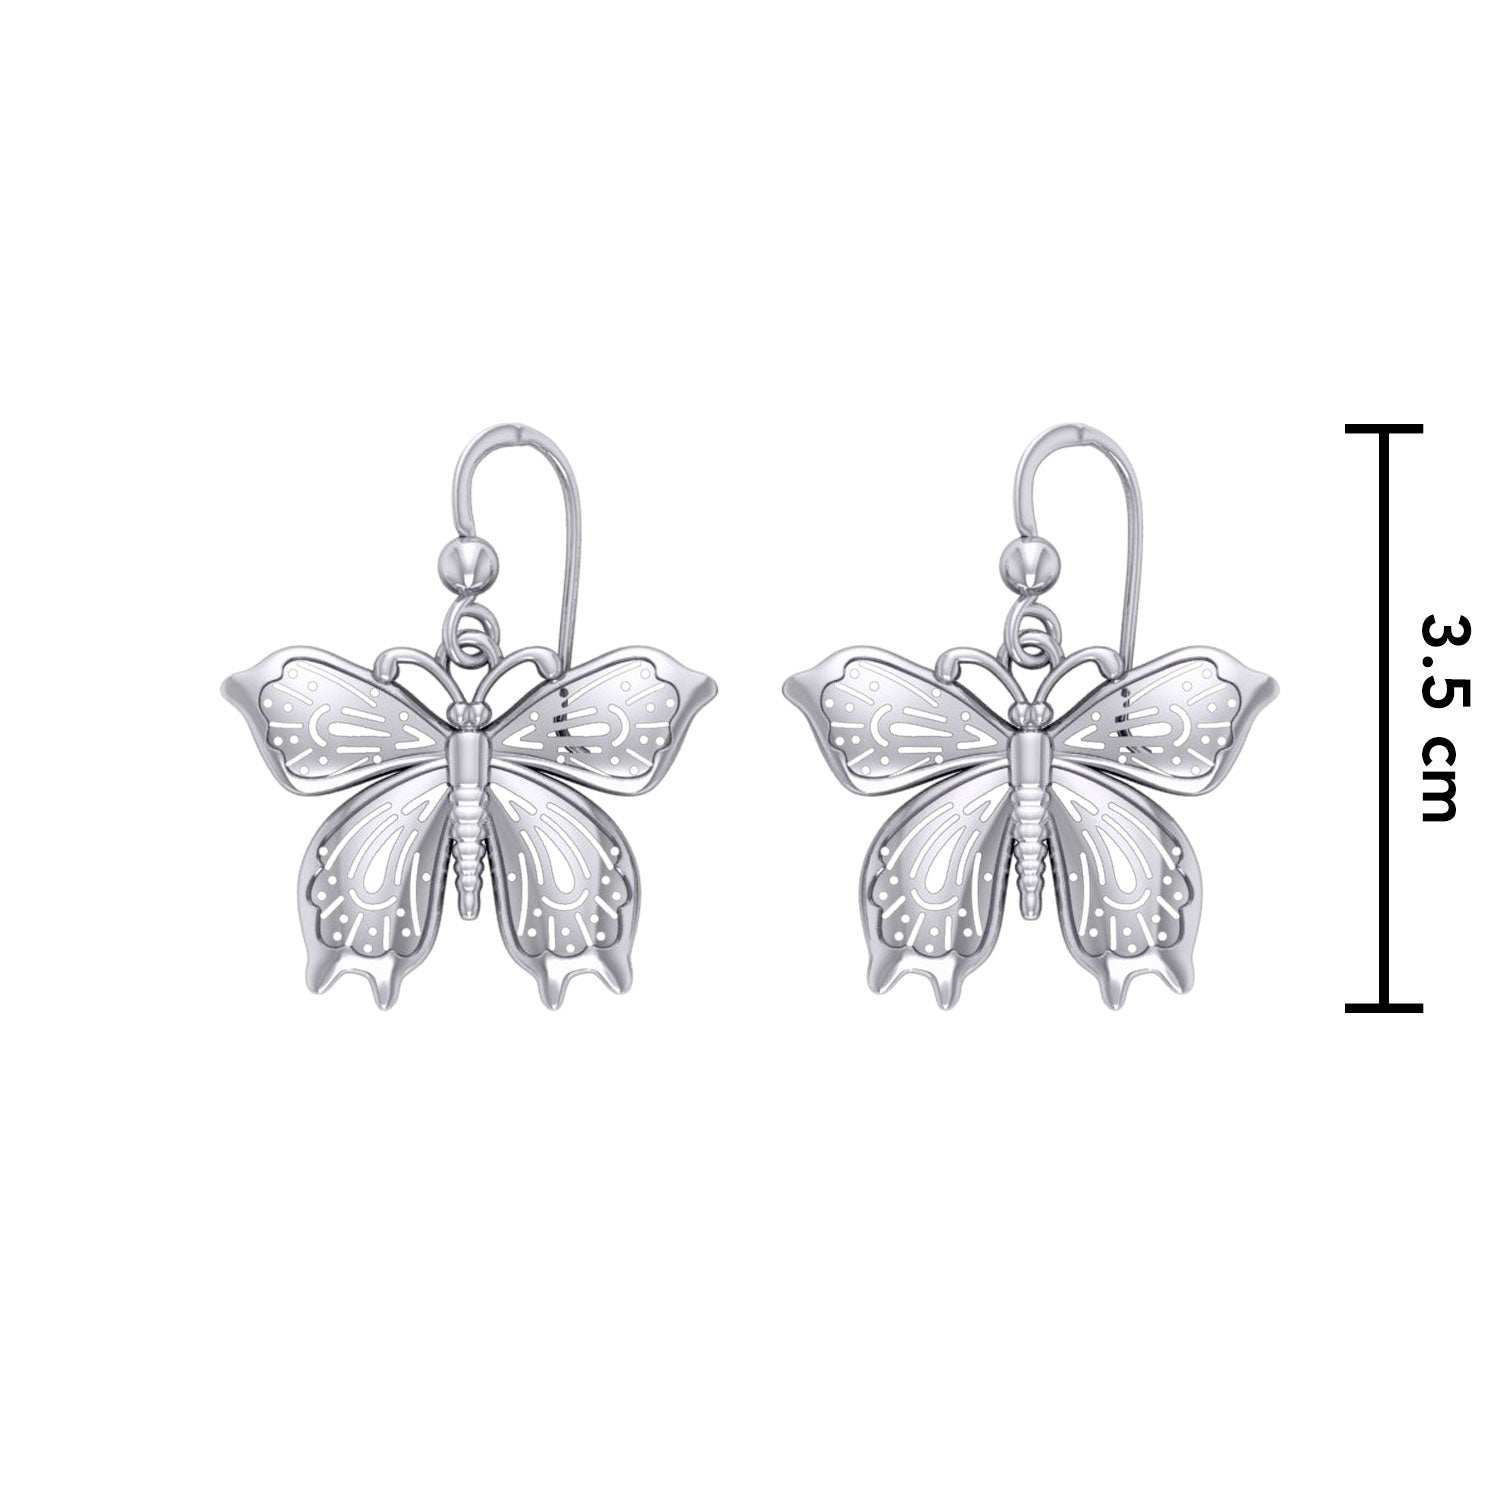 Chasing butterflies in beauty and grace ~ Sterling Silver Jewelry Butterfly Hook Earrings TER1553